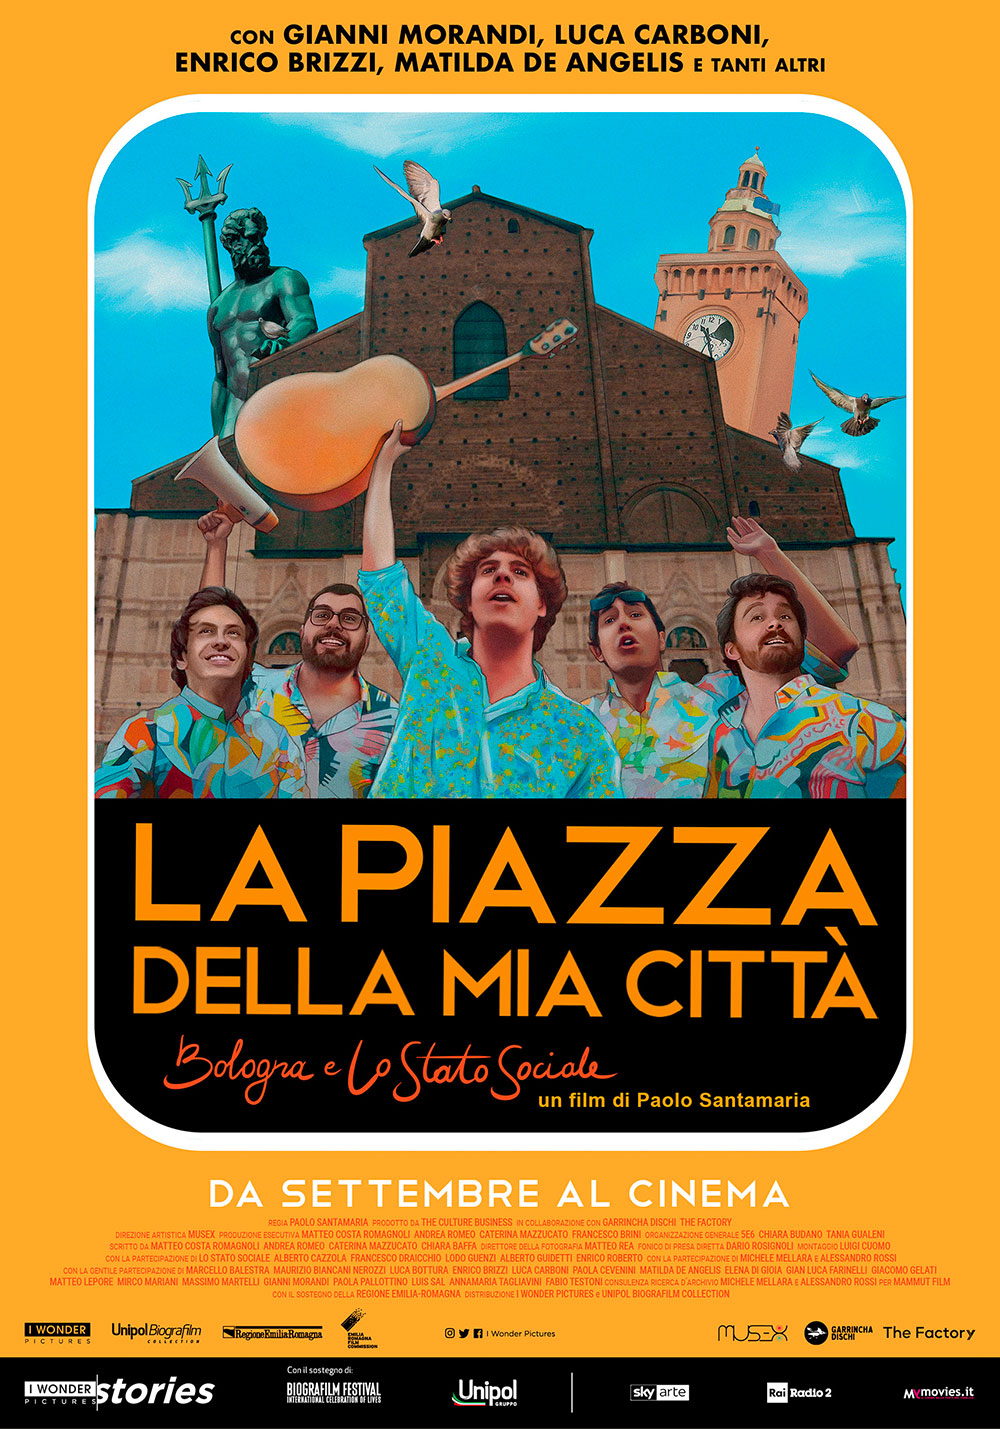  Dall'articolo: La piazza della mia citt - Bologna e Lo Stato Sociale, il poster ufficiale del film.